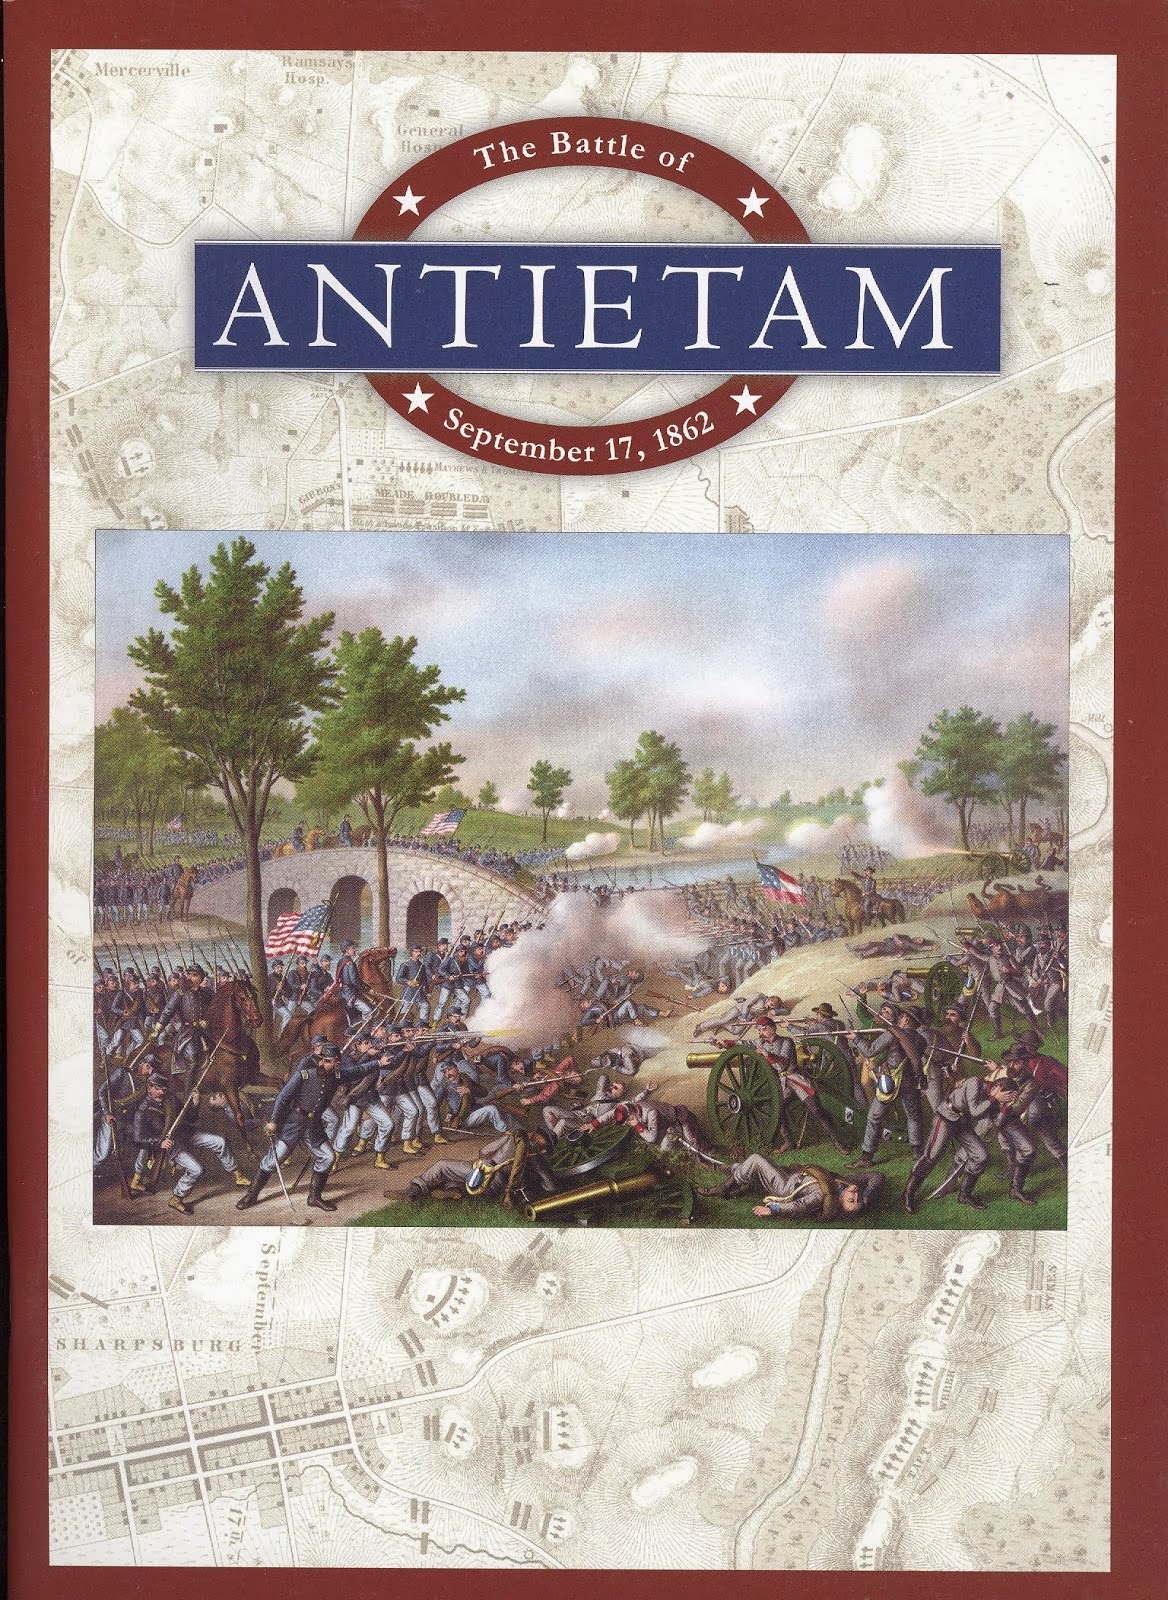 The Battle of Antietam: September 17, 1862